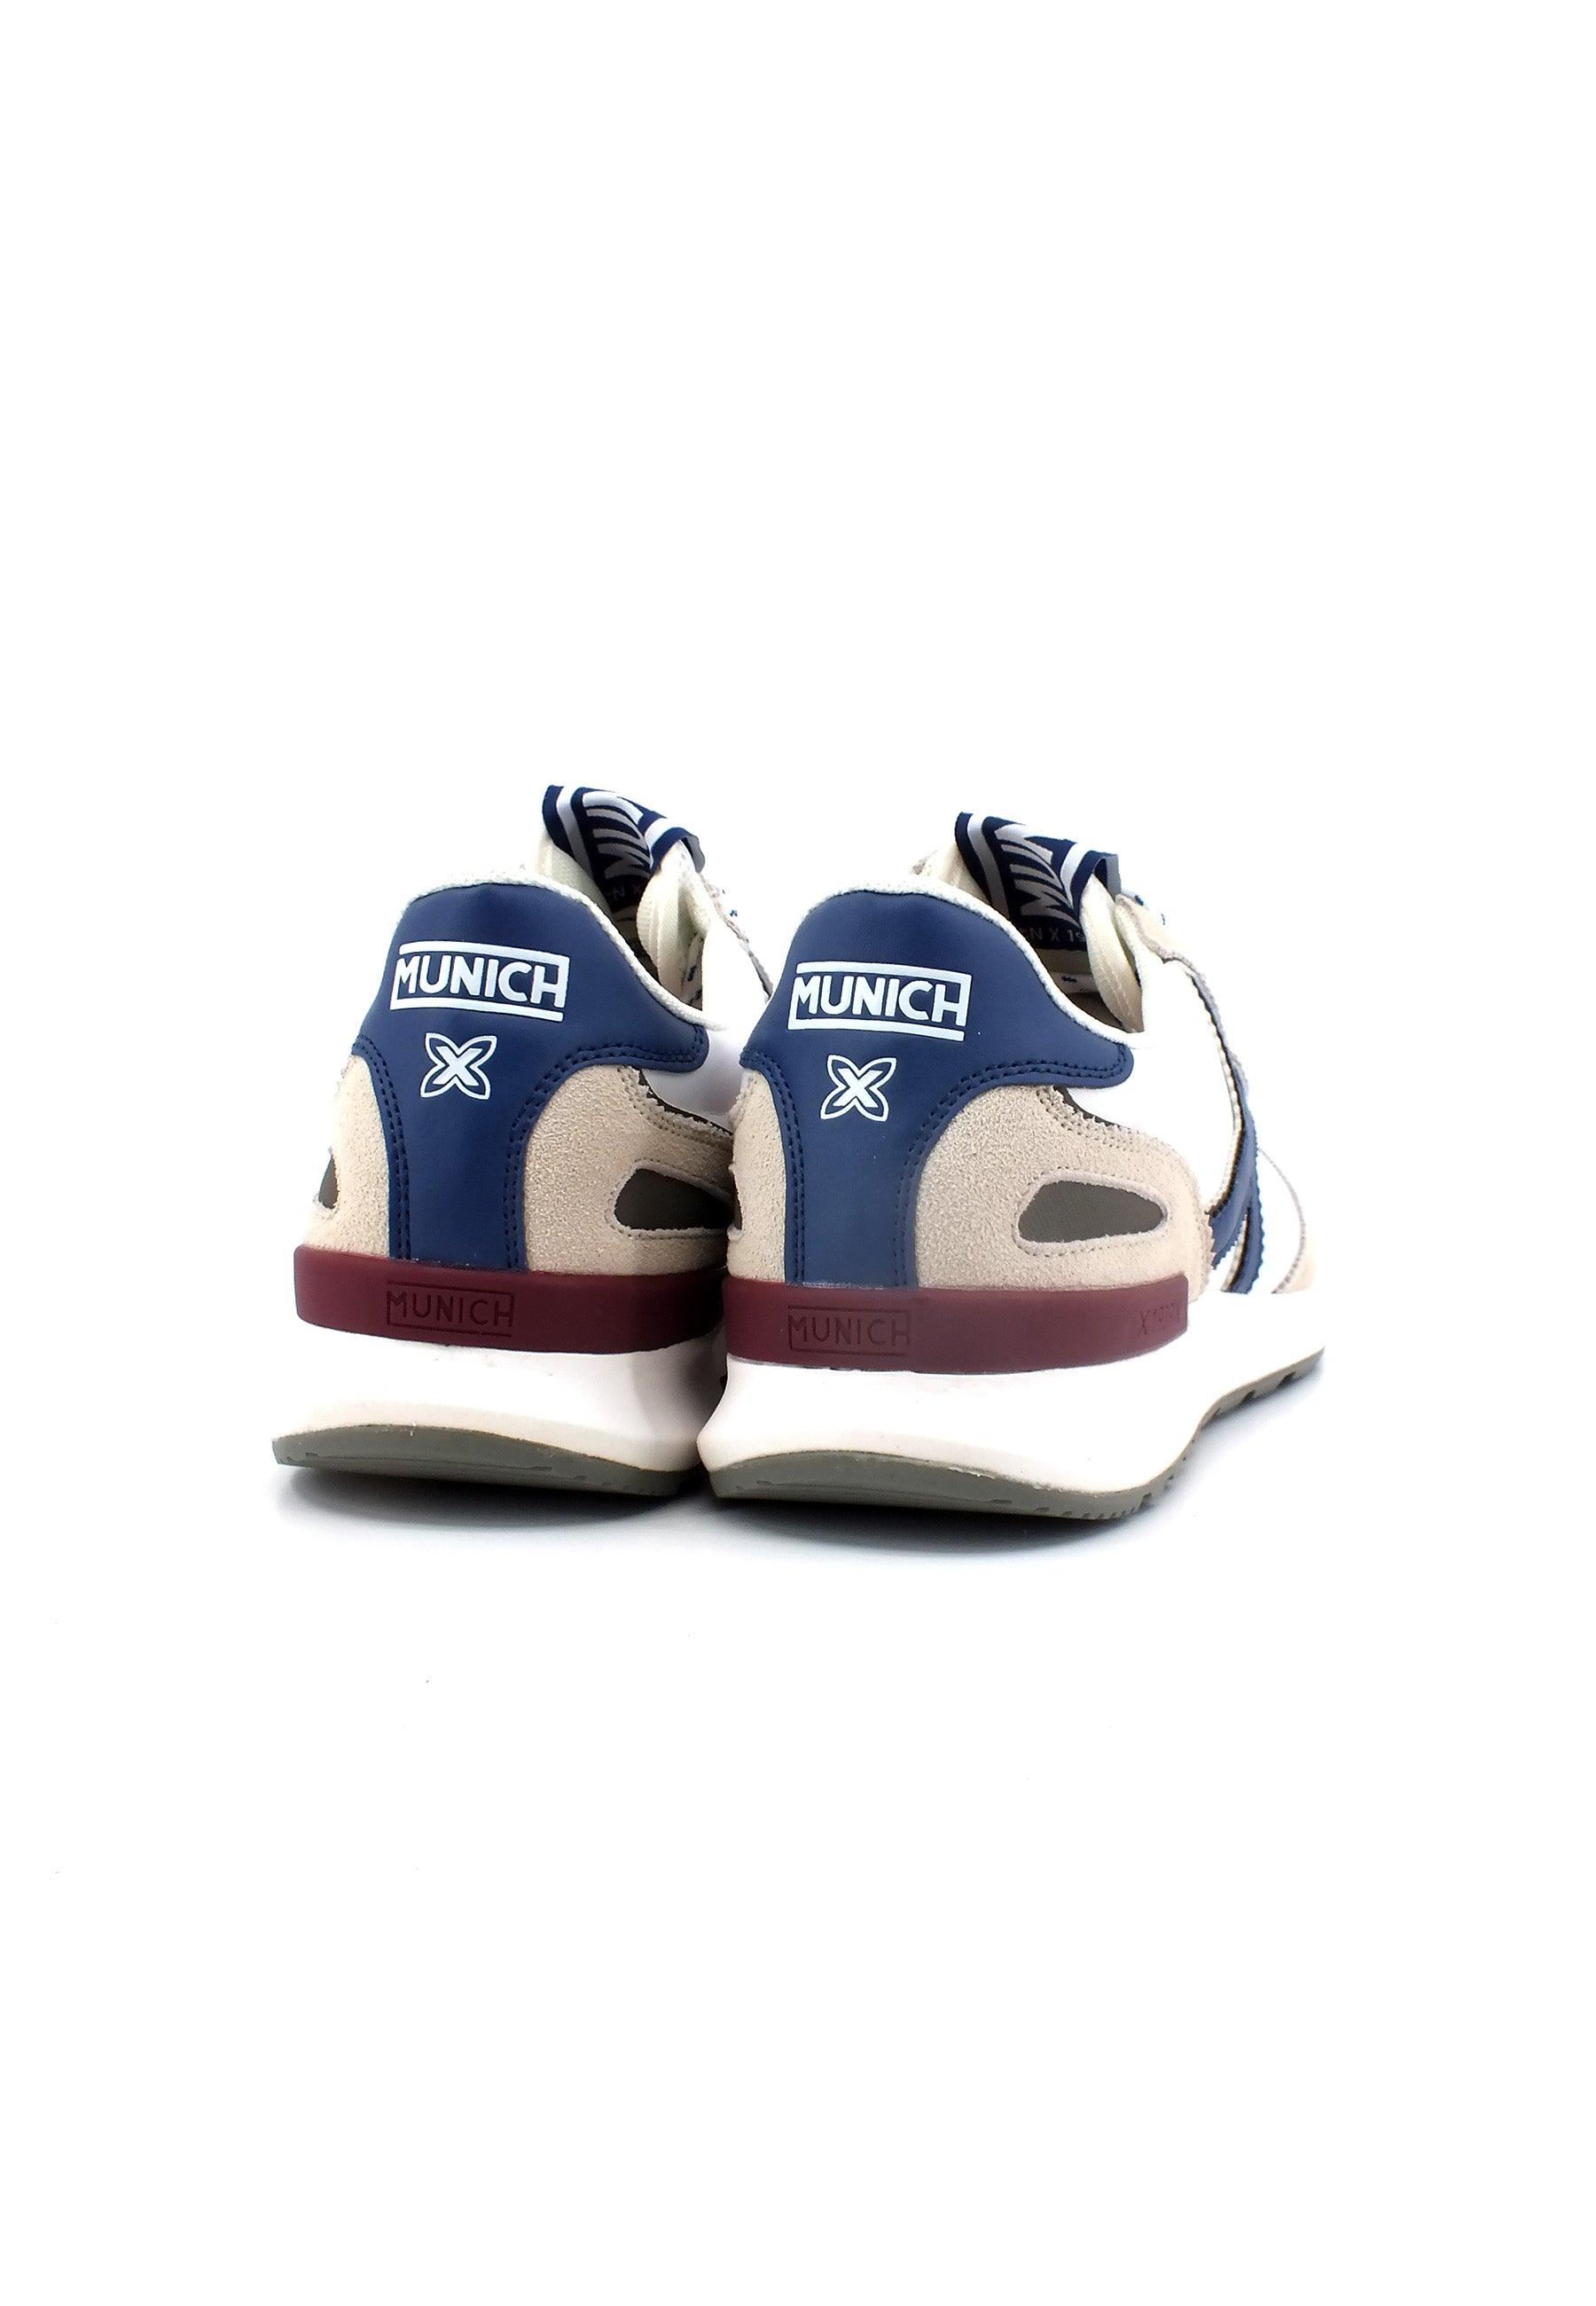 MUNICH Dynamo 55 Sneaker Uomo White Blue Beige 8700055 - Sandrini Calzature e Abbigliamento